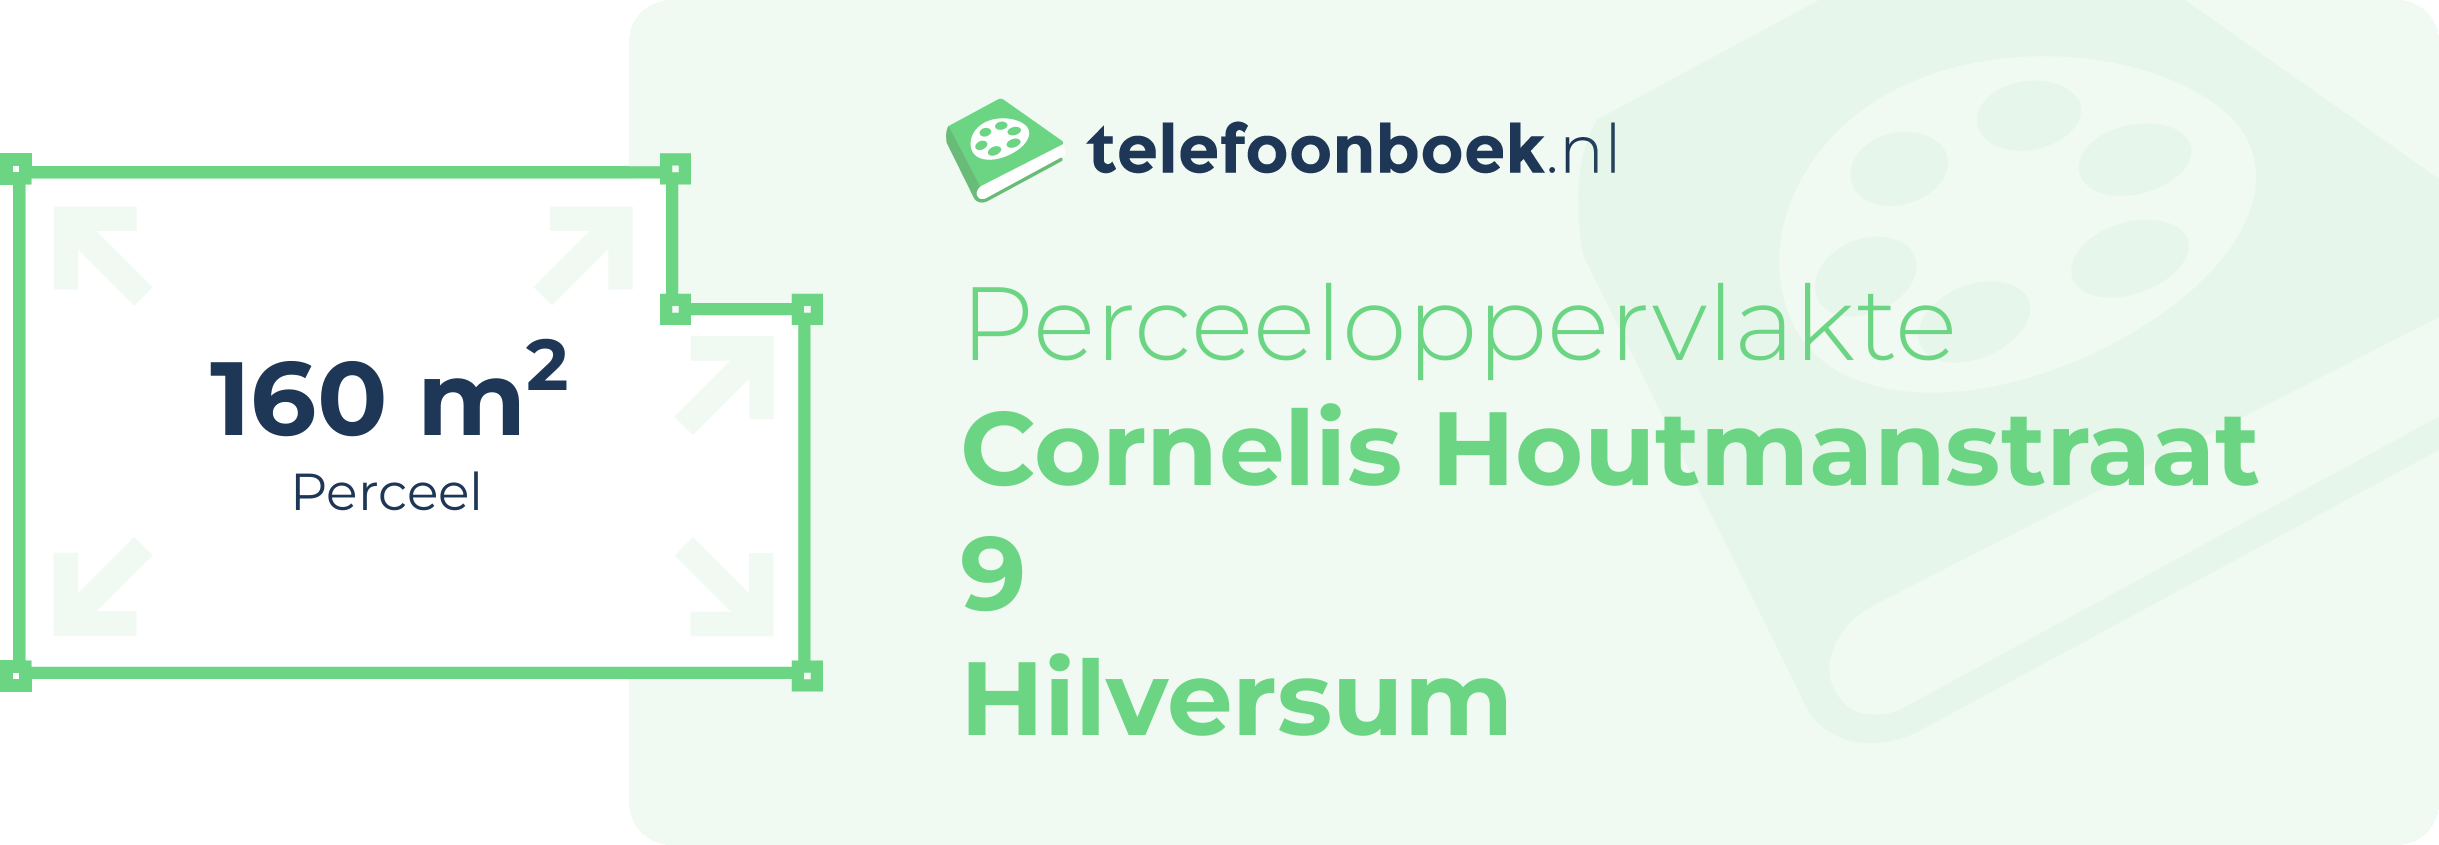 Perceeloppervlakte Cornelis Houtmanstraat 9 Hilversum